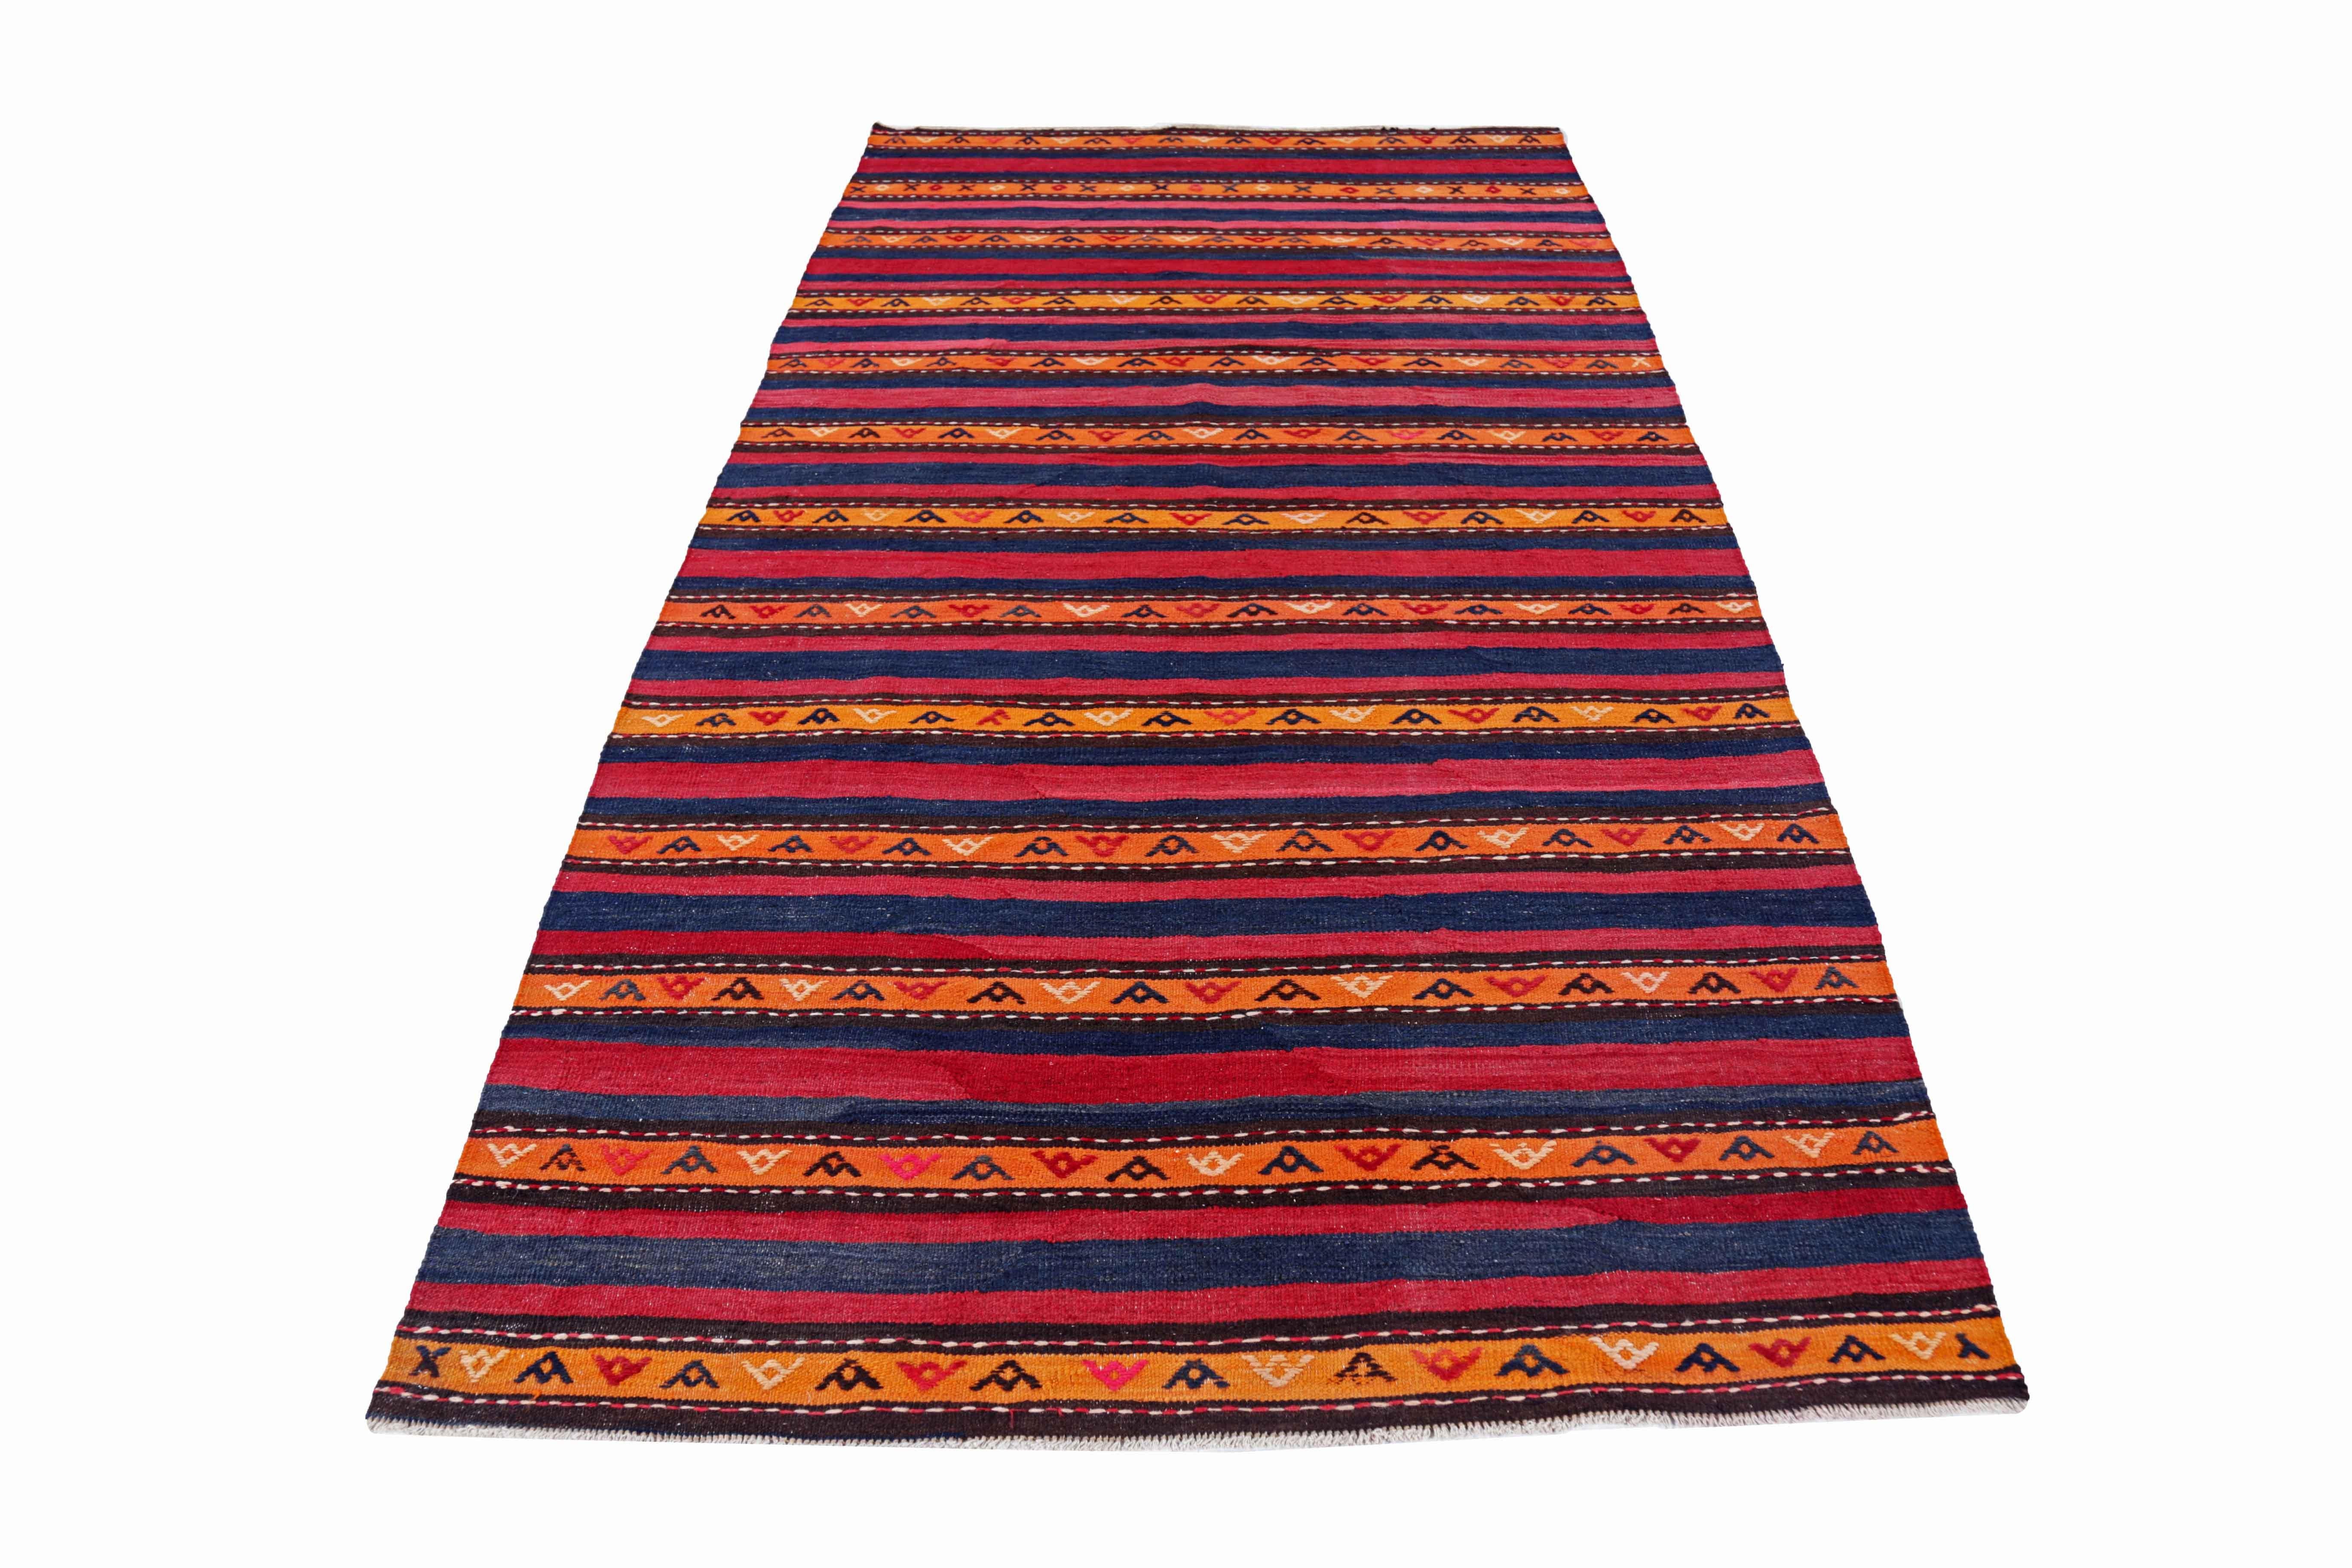 Ancien tapis persan tissé à la main à partir de la meilleure laine de mouton. Il est coloré avec des colorants végétaux entièrement naturels, sans danger pour les humains et les animaux de compagnie. Il s'agit d'un motif Kilim traditionnel tissé à